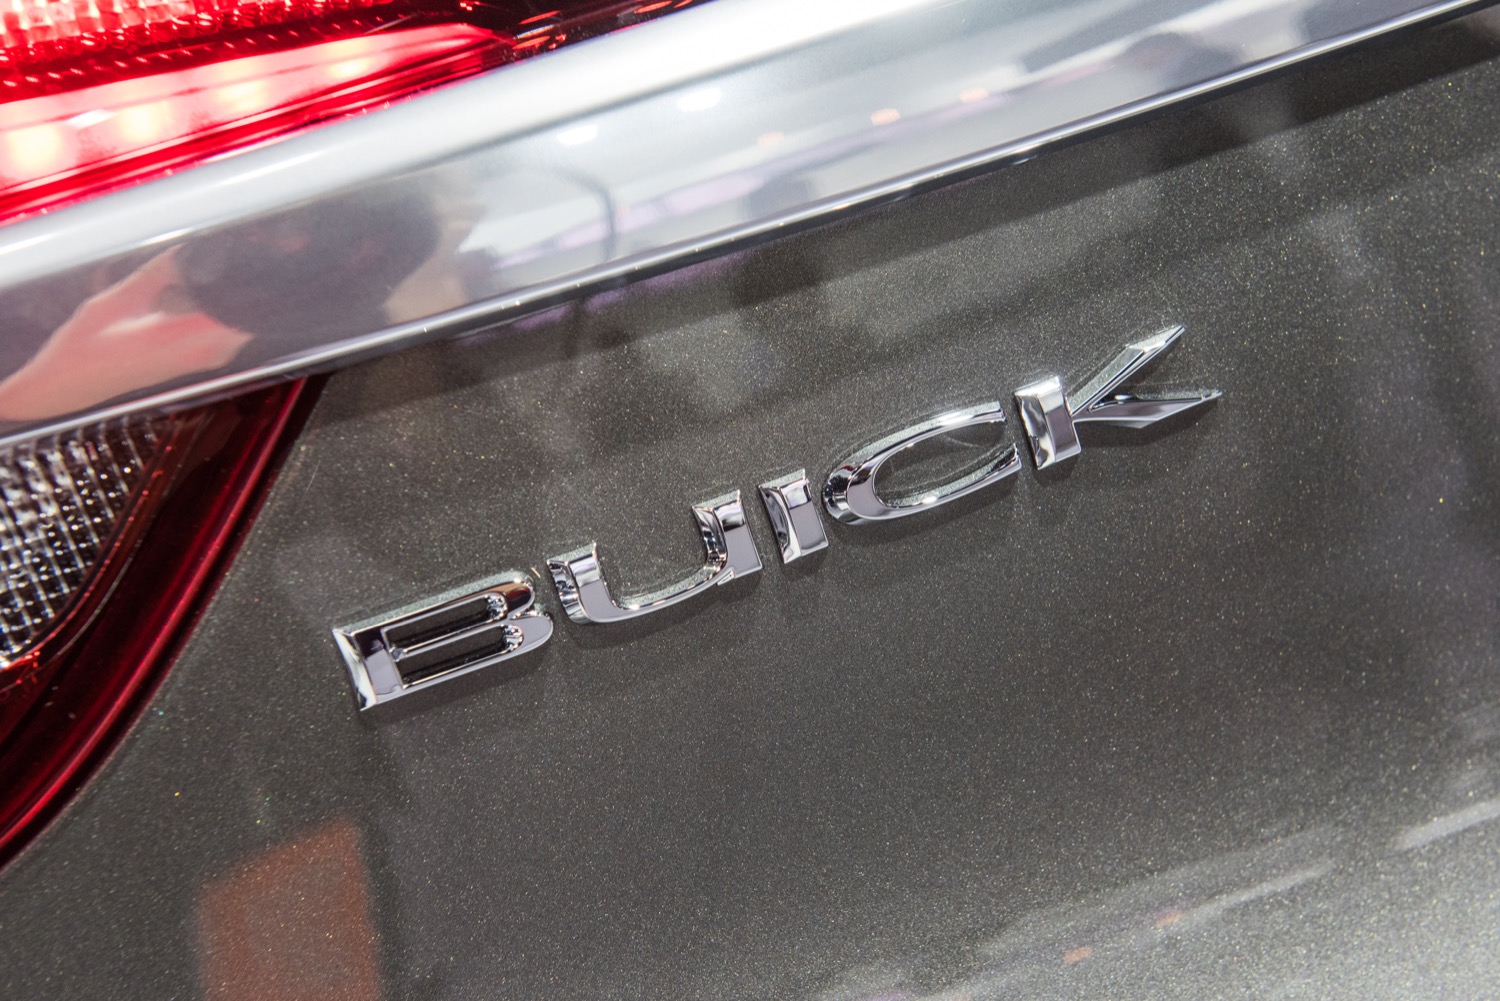 05-11 Buick Lacrosse Lucerne Rear Trunk "I" for BUICK Letter Emblem Badge Logo